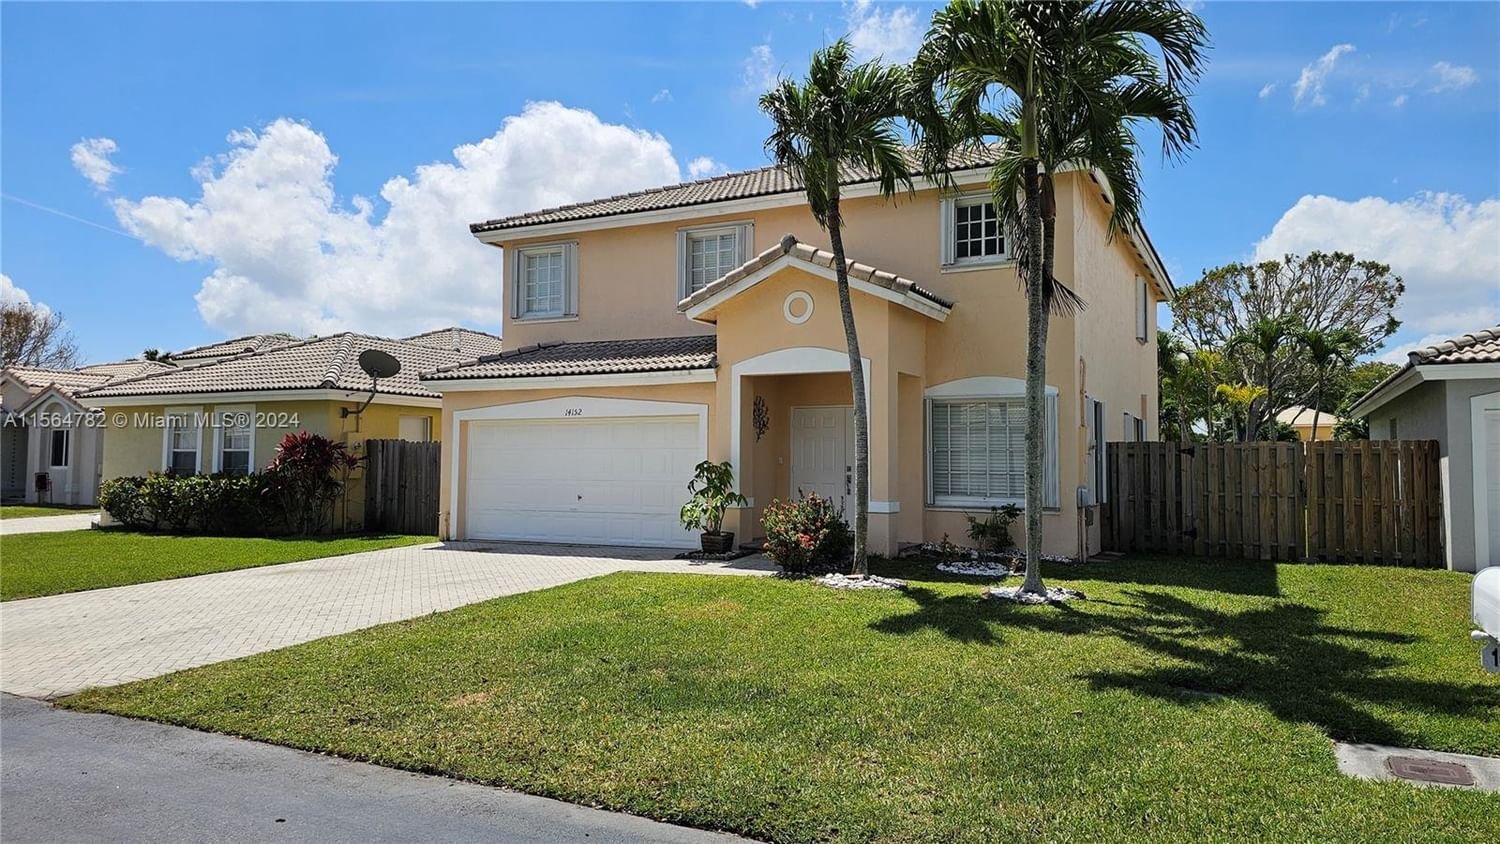 Real estate property located at 14152 154th Ct, Miami-Dade County, OAK CREEK NORTH, Miami, FL